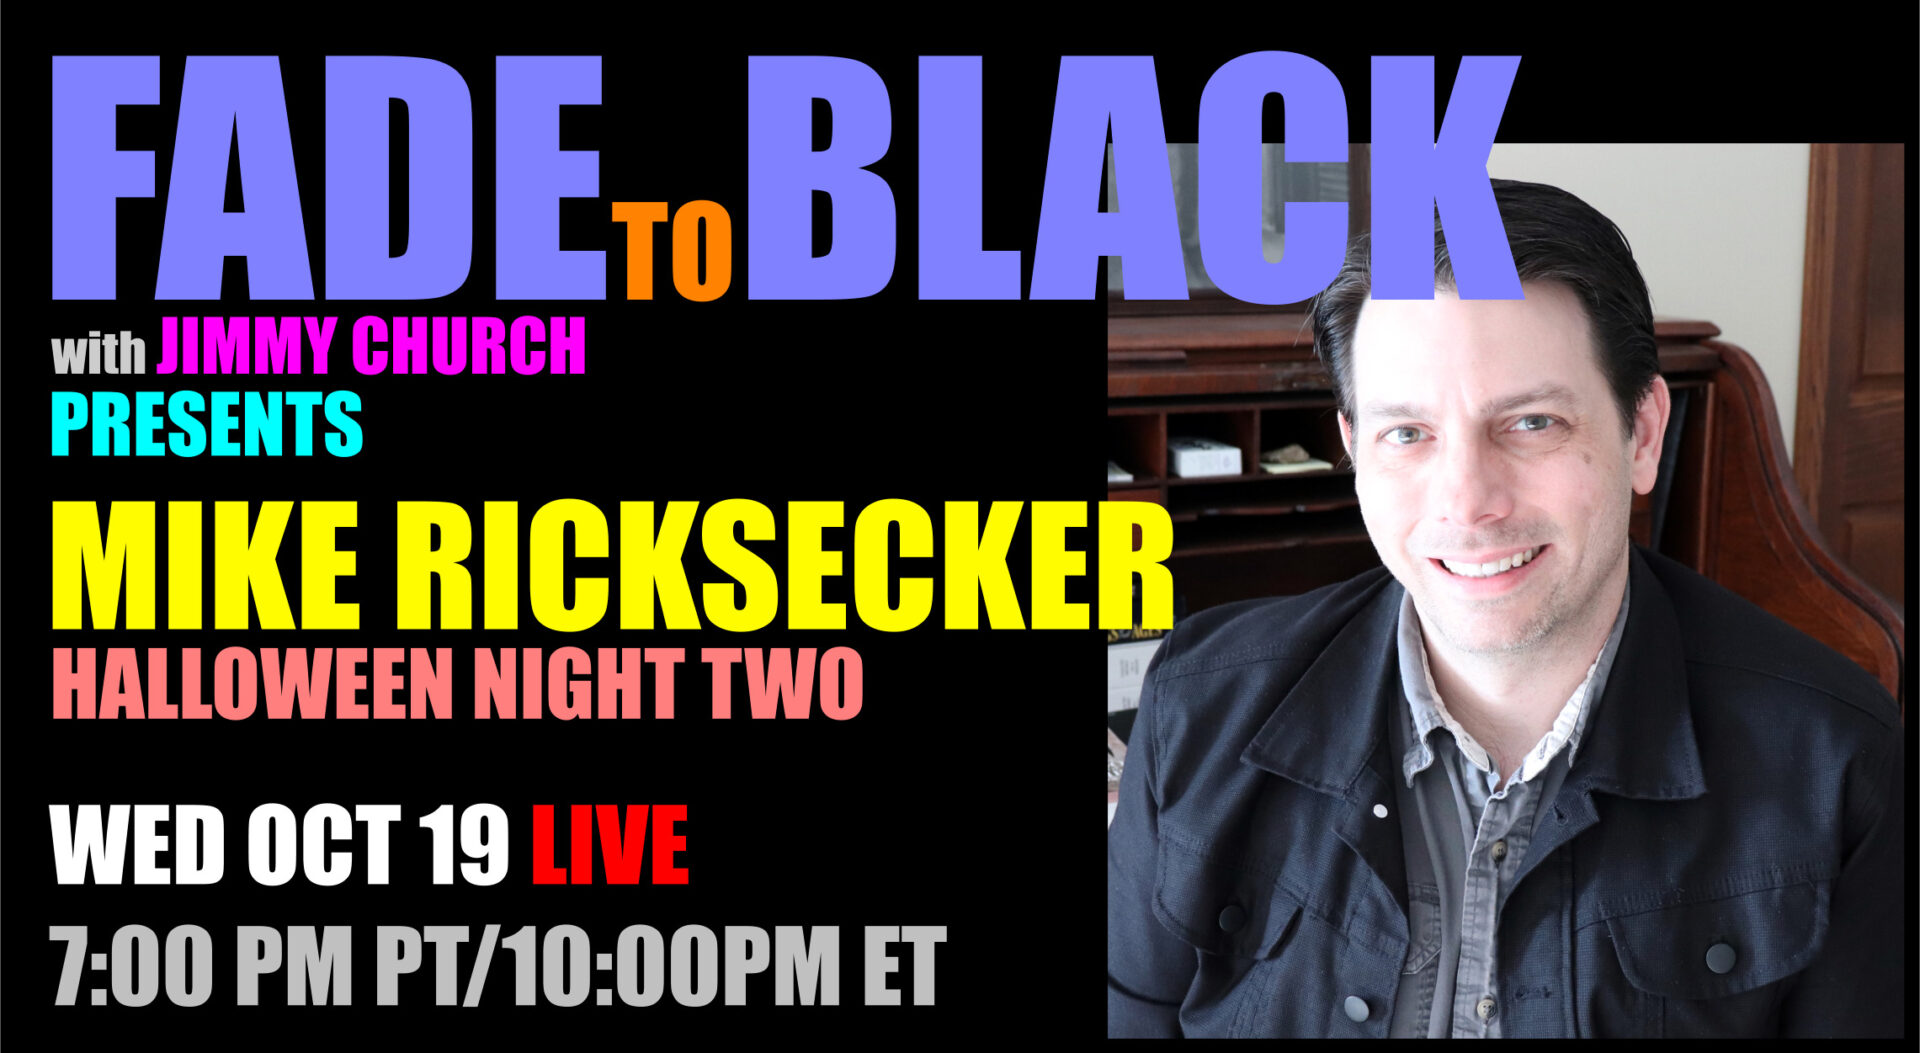 Fade To Black - Mick Ricksecker - October 19th